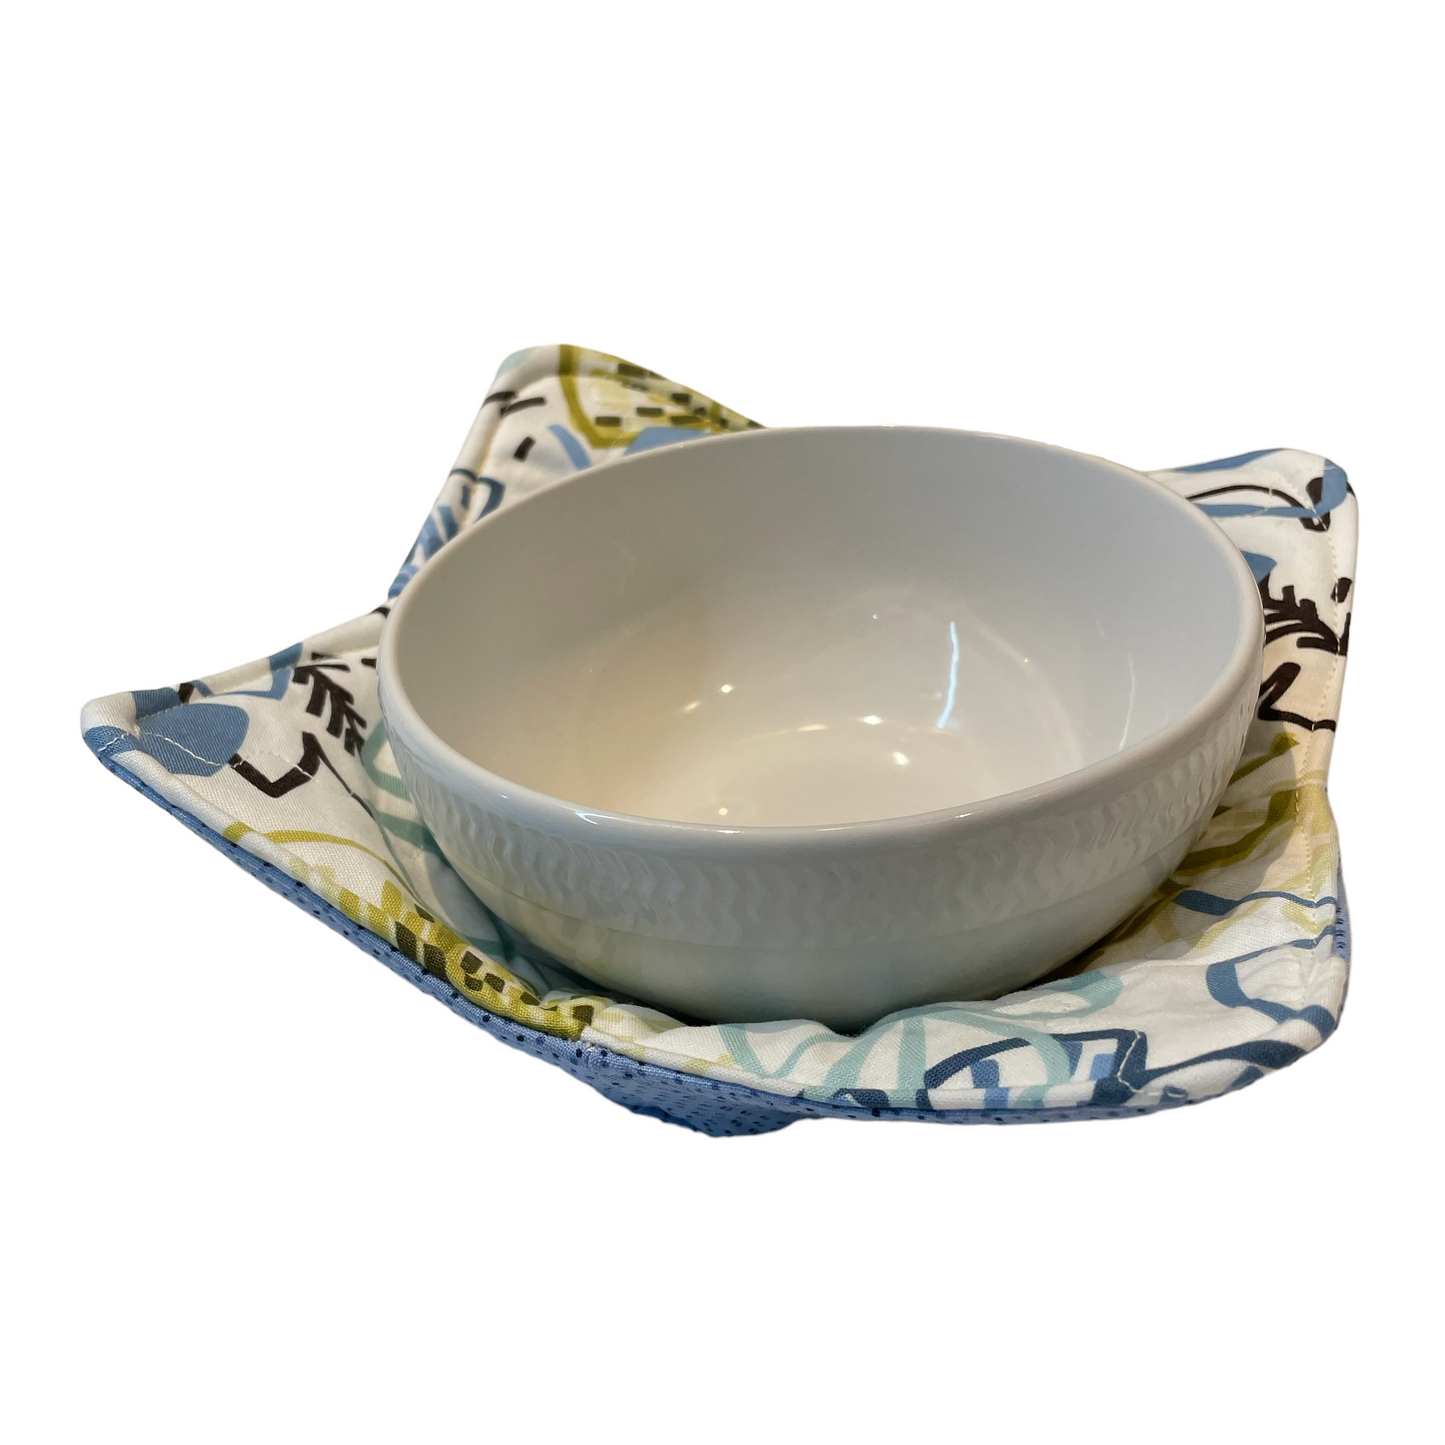 Blue Soup Bowl Cozy | Microwave Soup Bowl Cozy | Blue Soup Hugger - Home Stitchery Decor